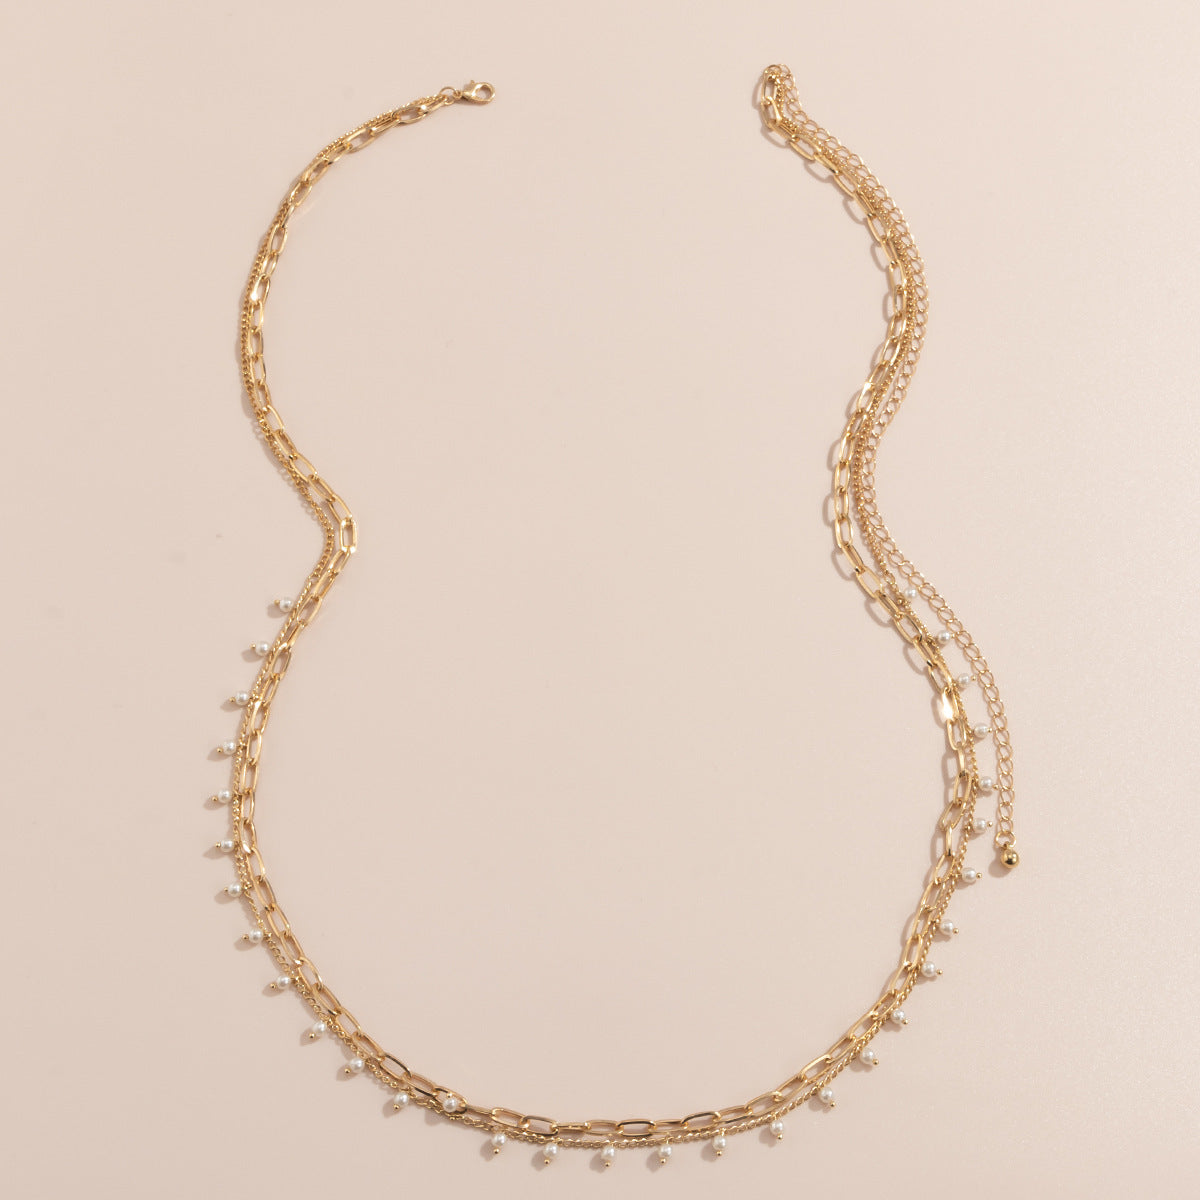 Ensemble de 2 chaînes de taille mini perles, disponible en argent et en dorée